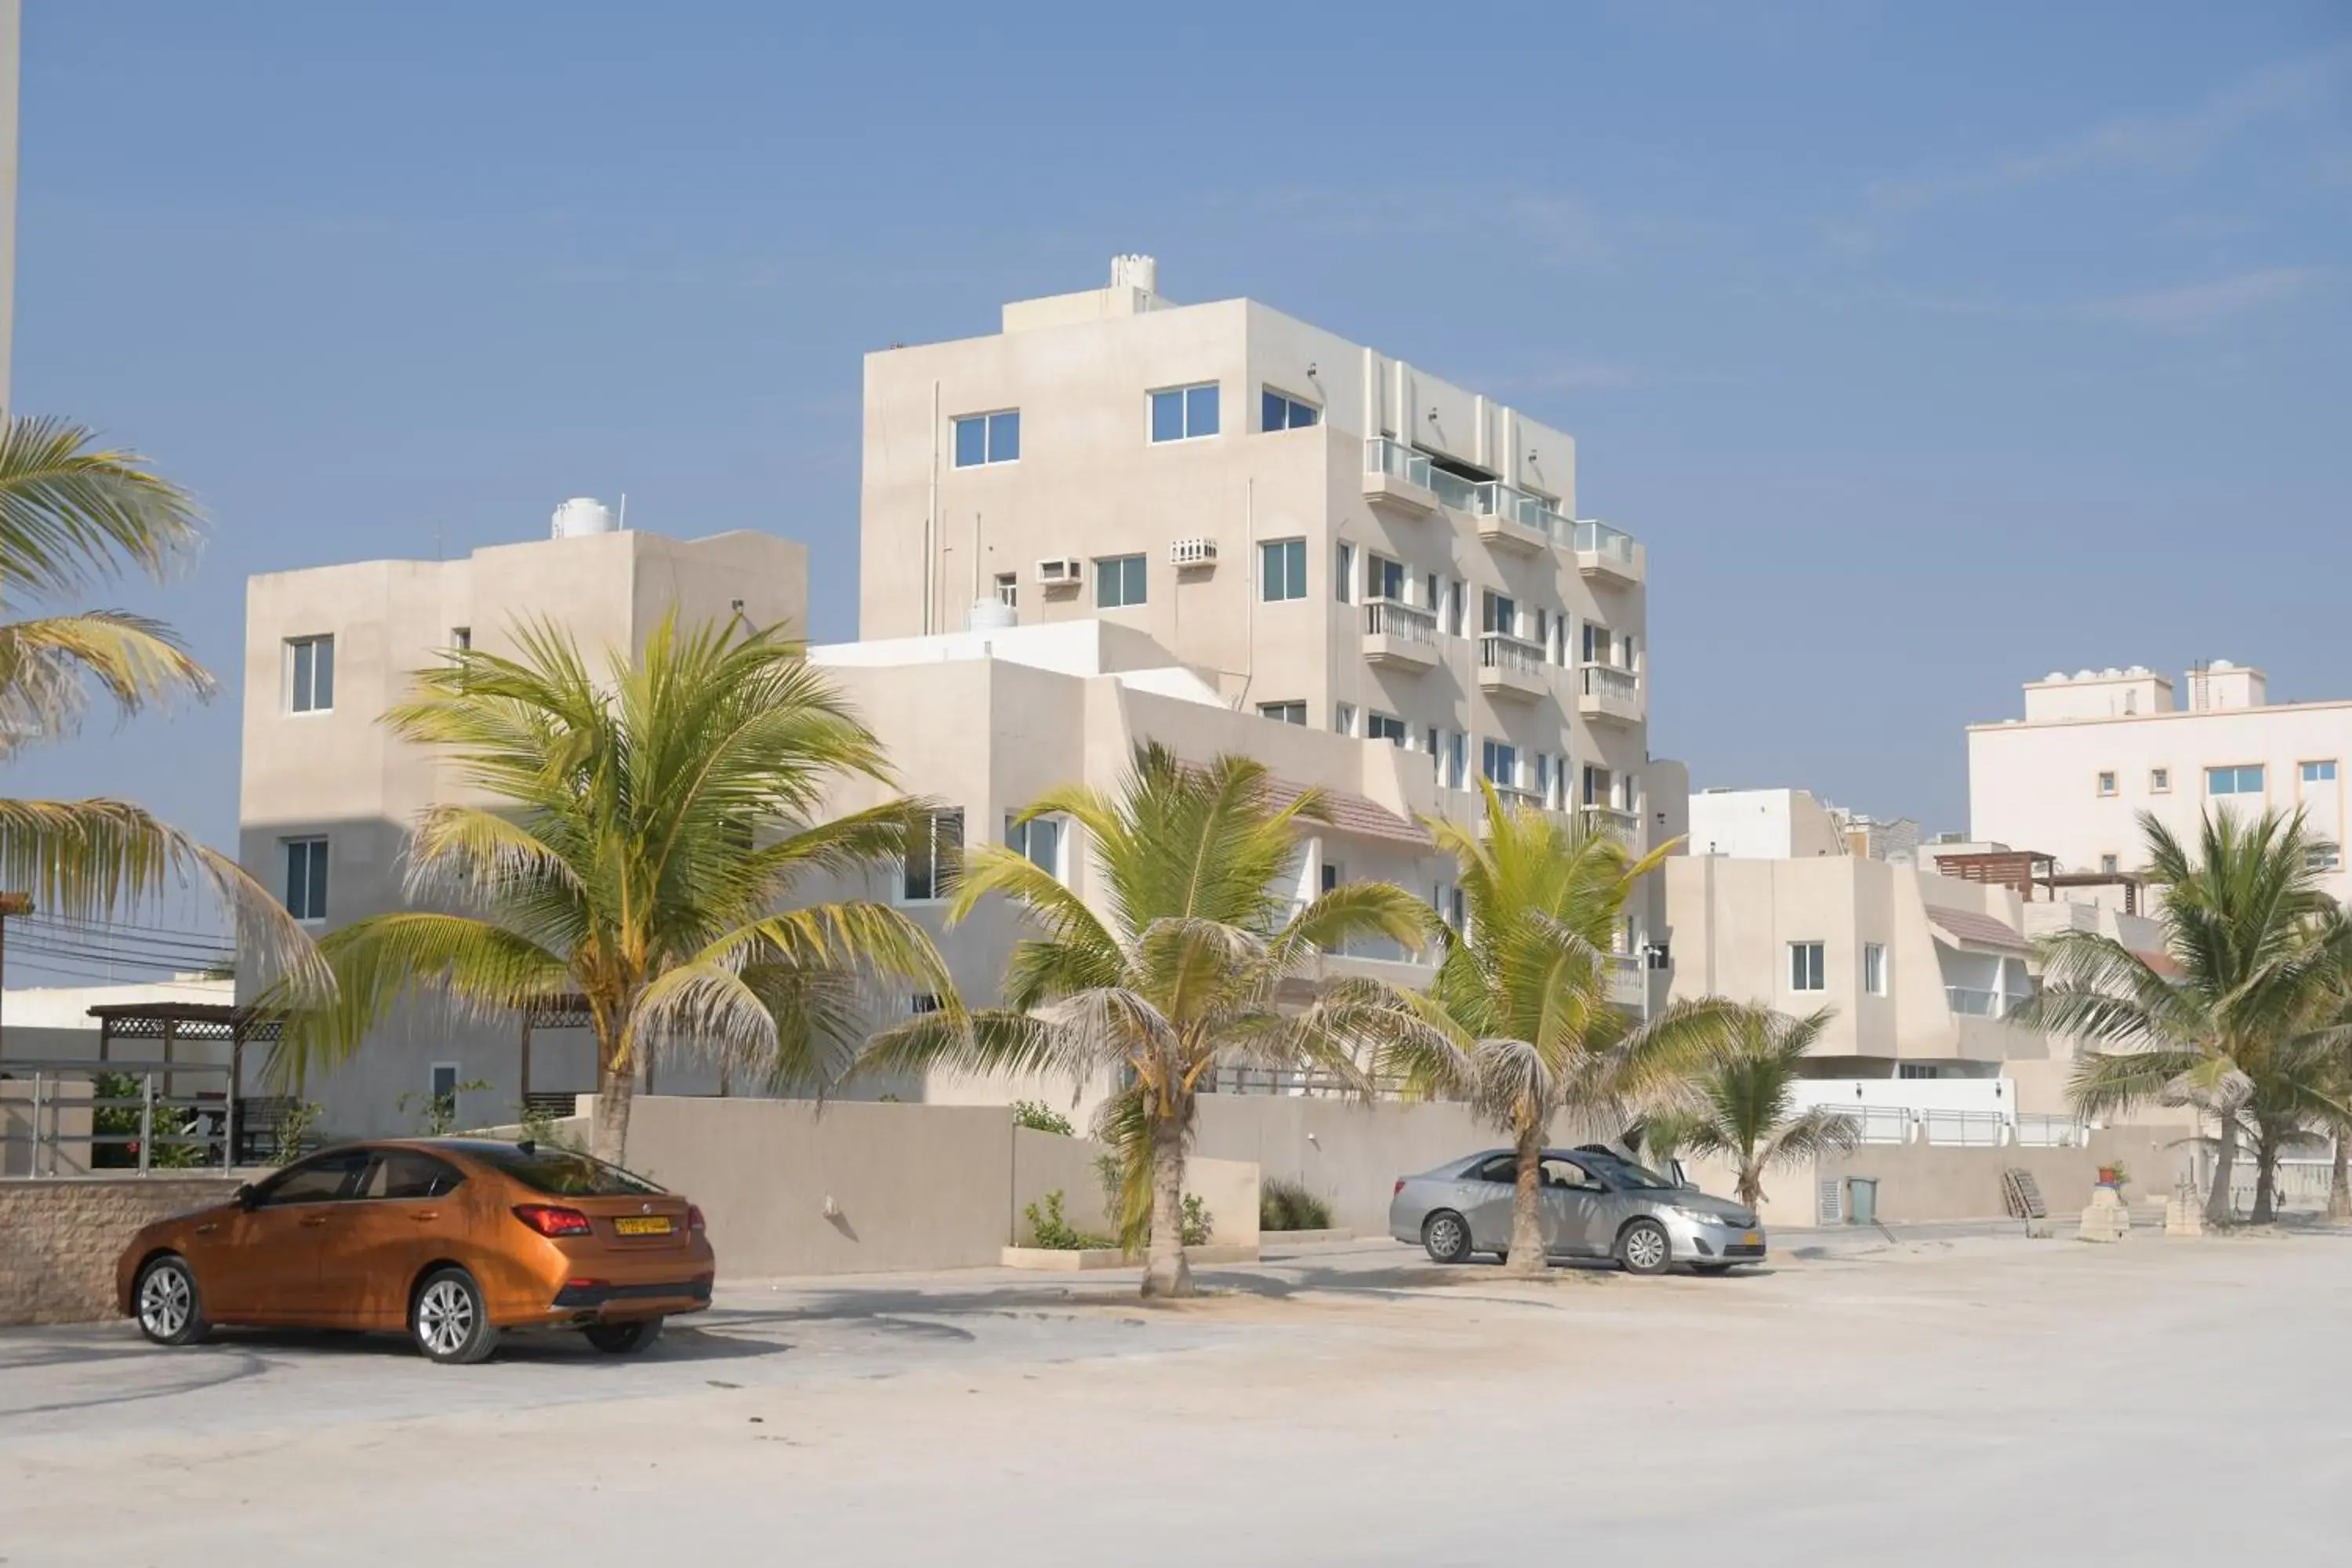 Property Building in Salalah Beach Resort Hotel